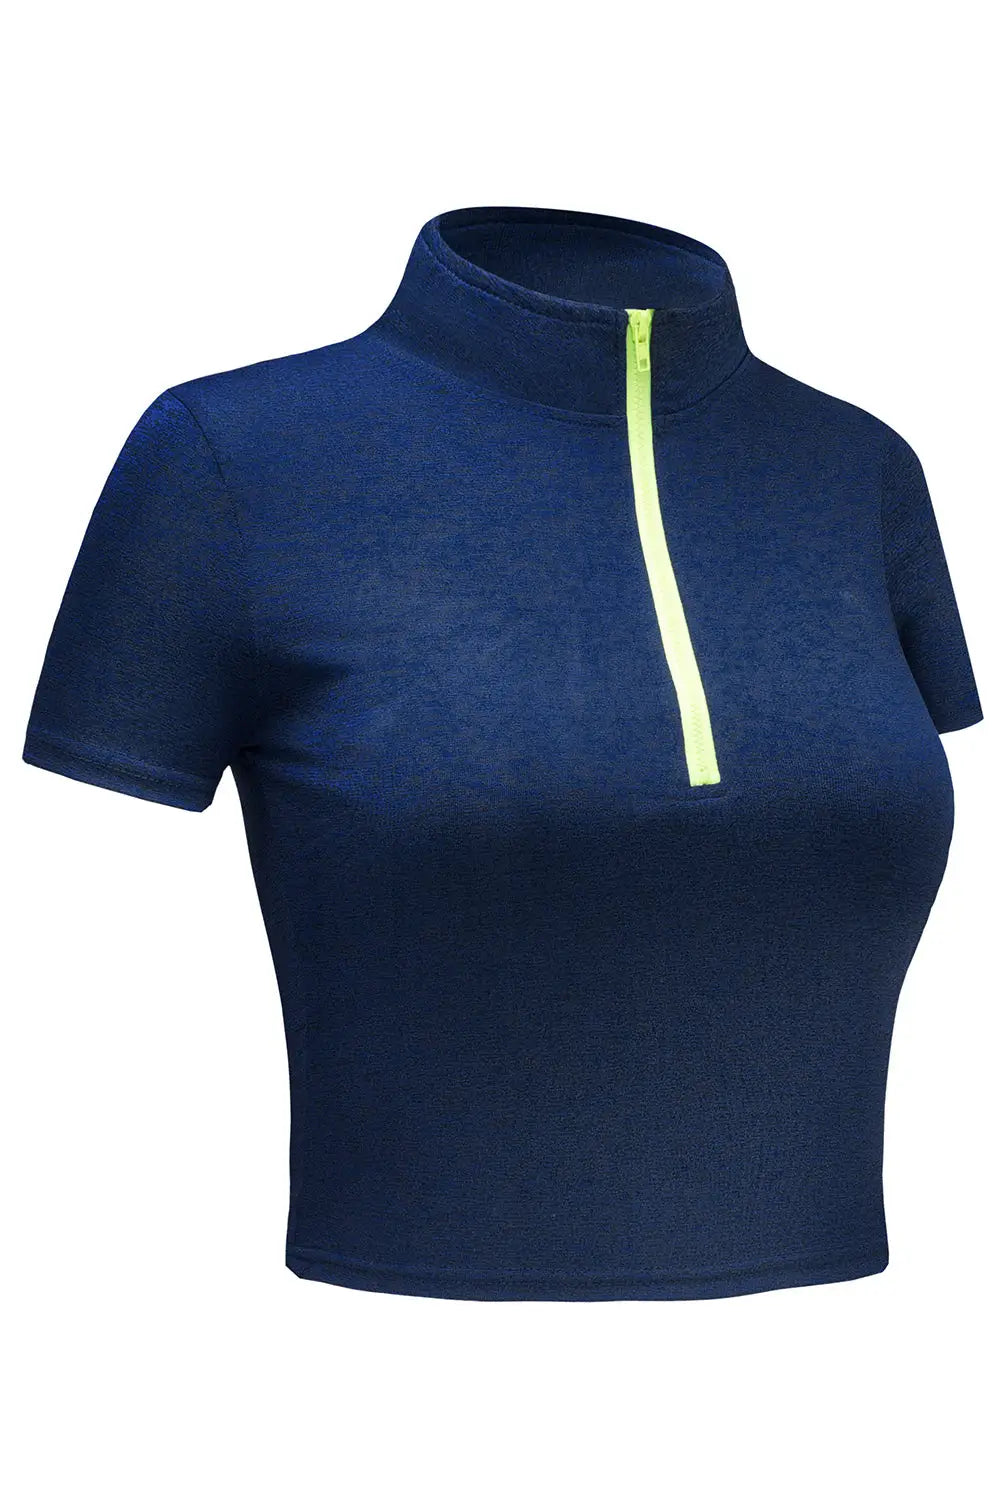 Blue Half Zipper Short Sleeve Active Crop Top - Activewear